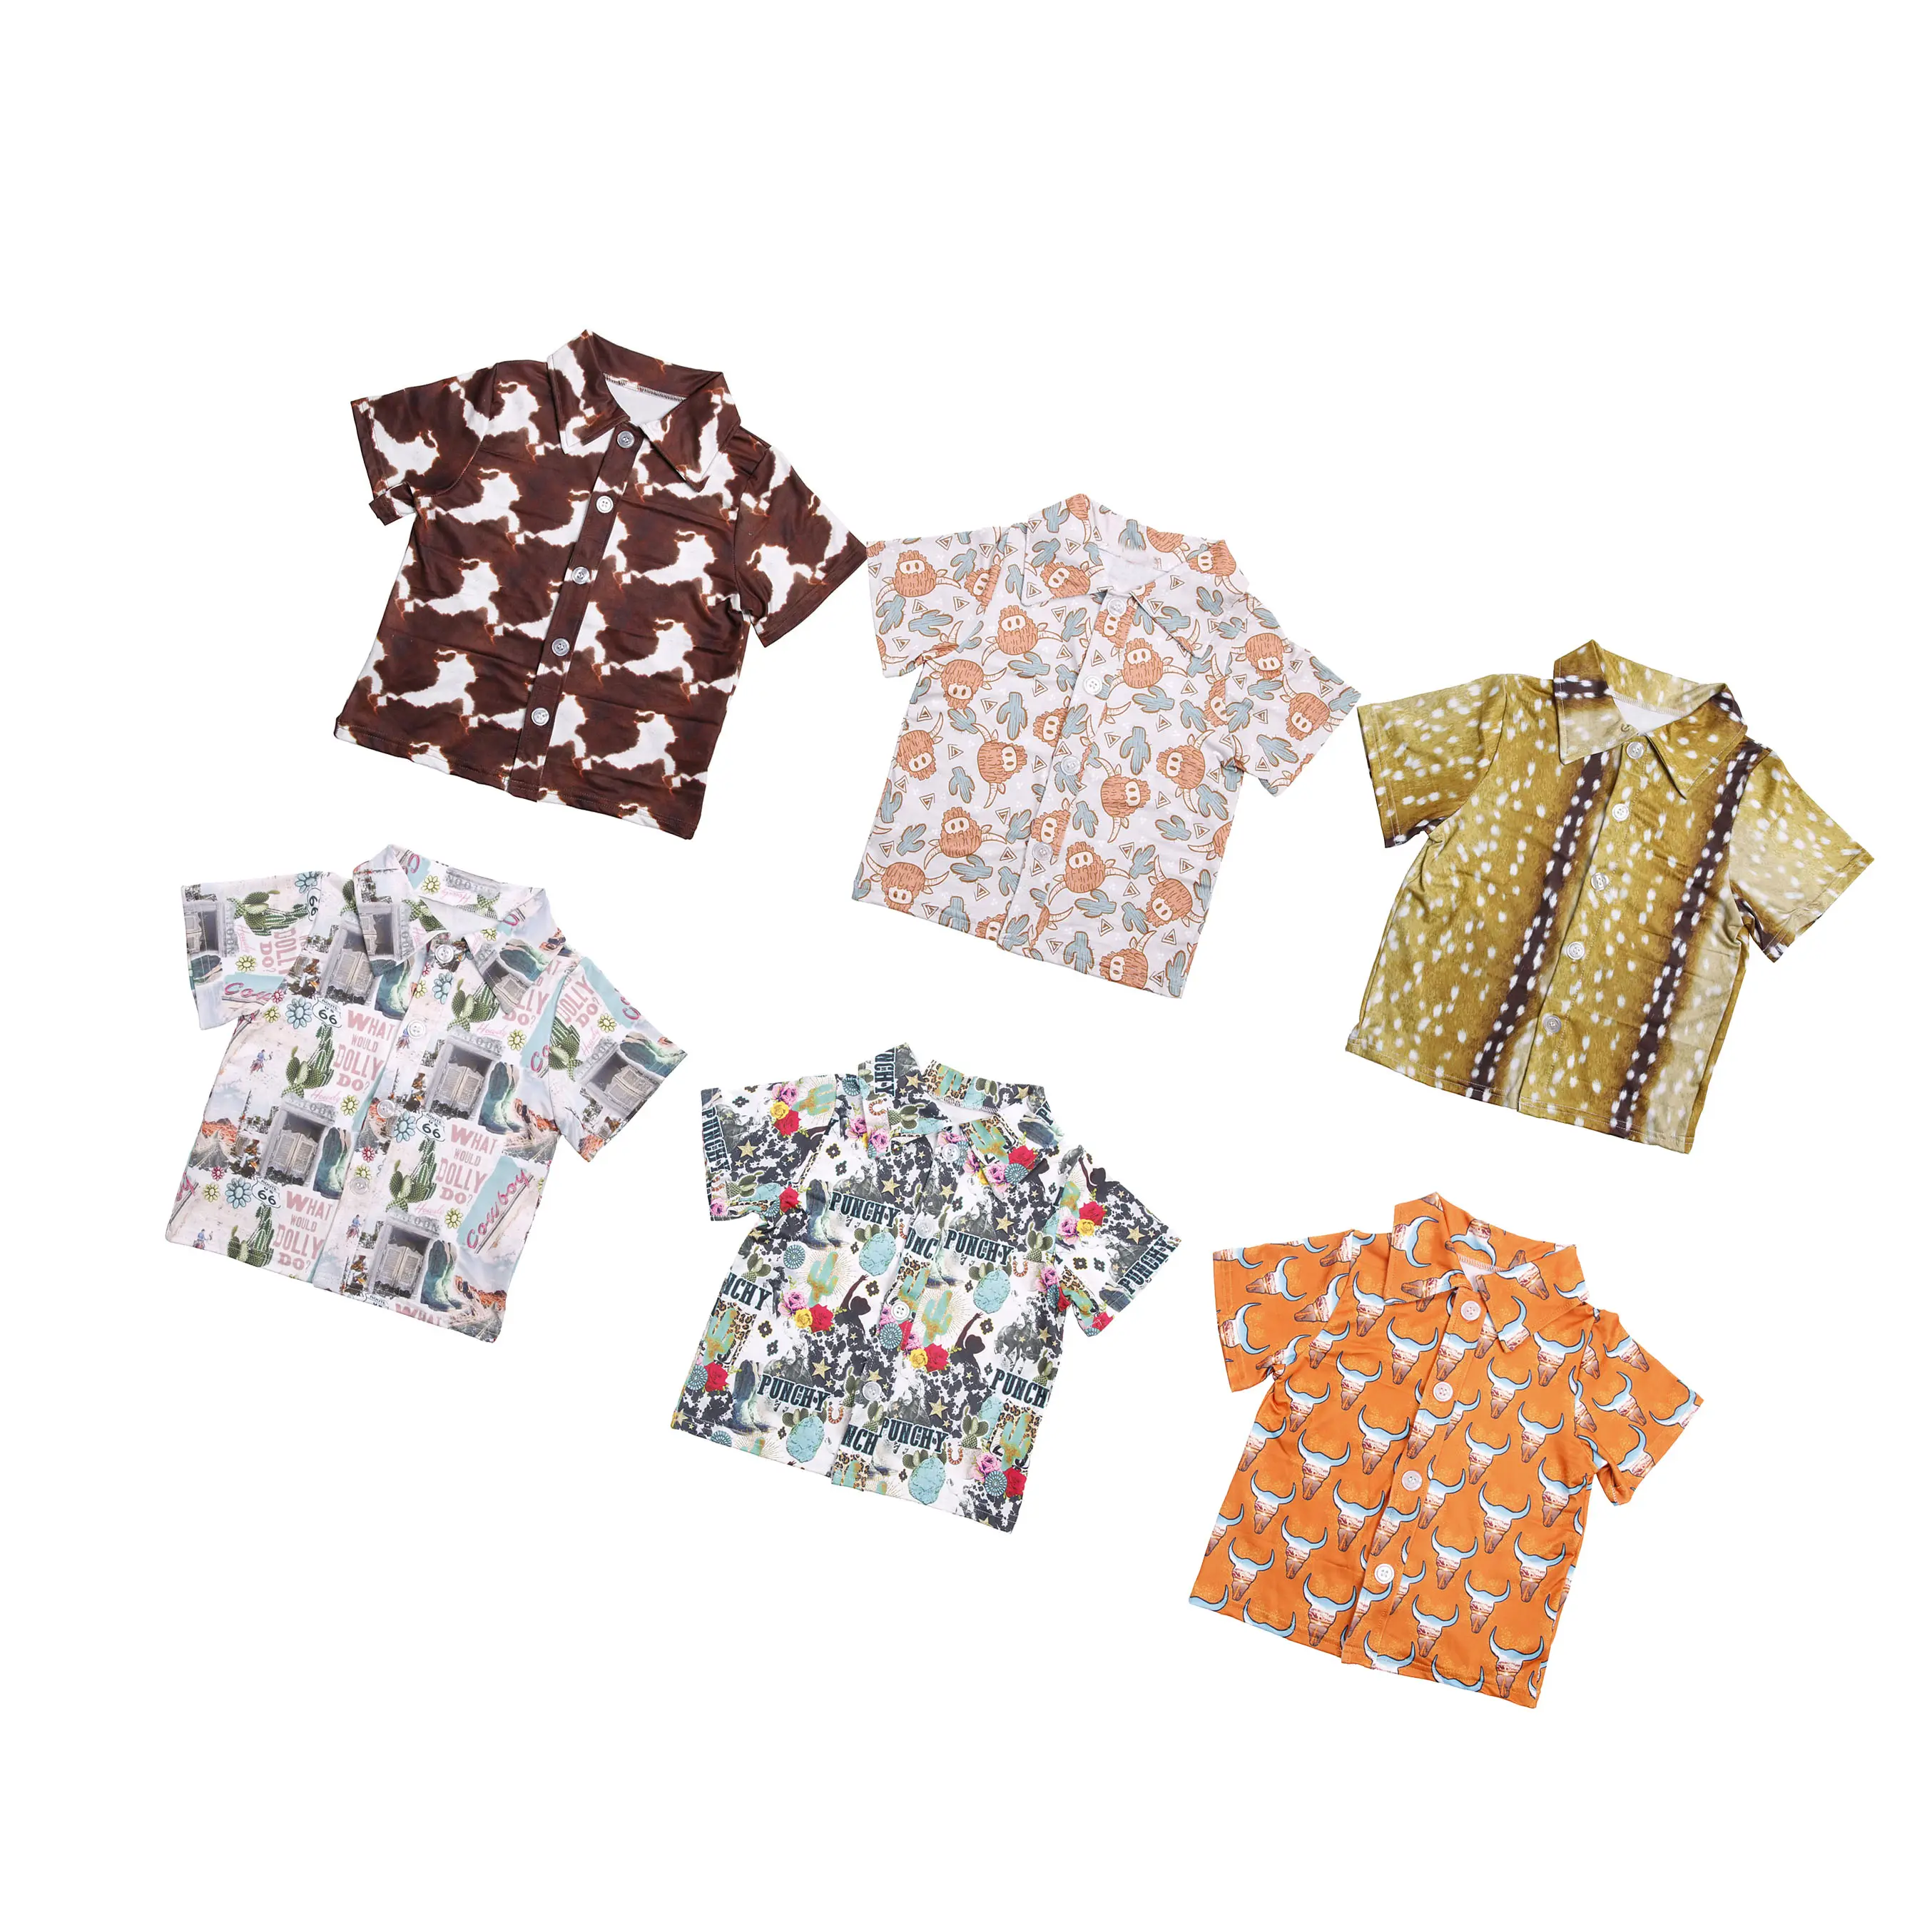 Atacado barato roupas menino manga curta t-shirt dos desenhos animados impresso camisas meninos leite seda verão tops para crianças